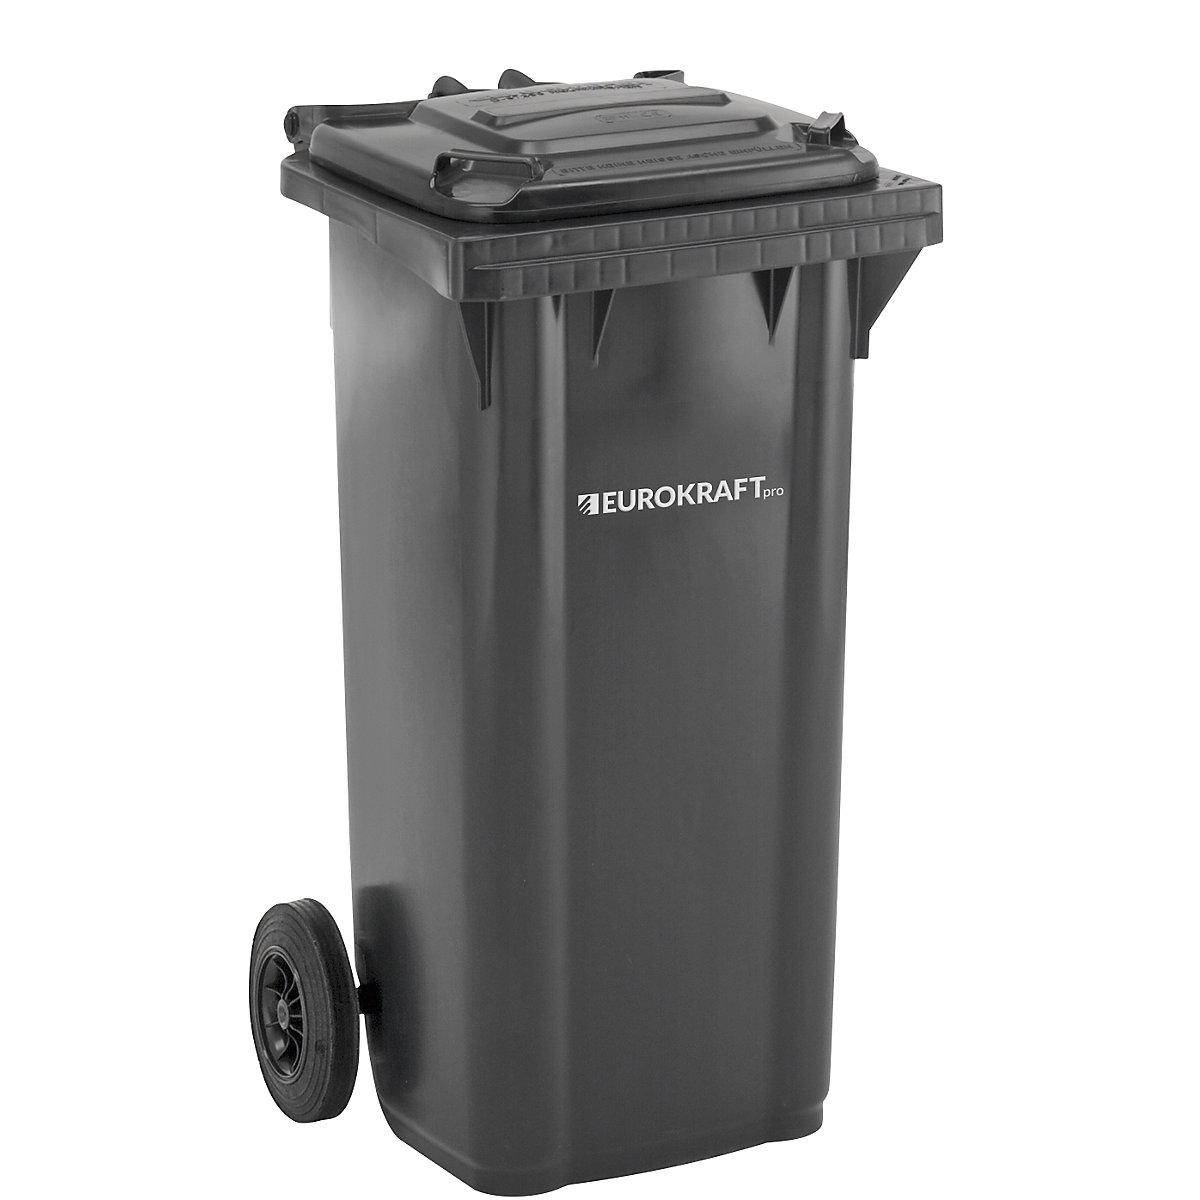 EUROKRAFTpro – Plastic waste bin, DIN EN 840, capacity 120 l, WxHxD 505 x 1005 x 555 mm, charcoal